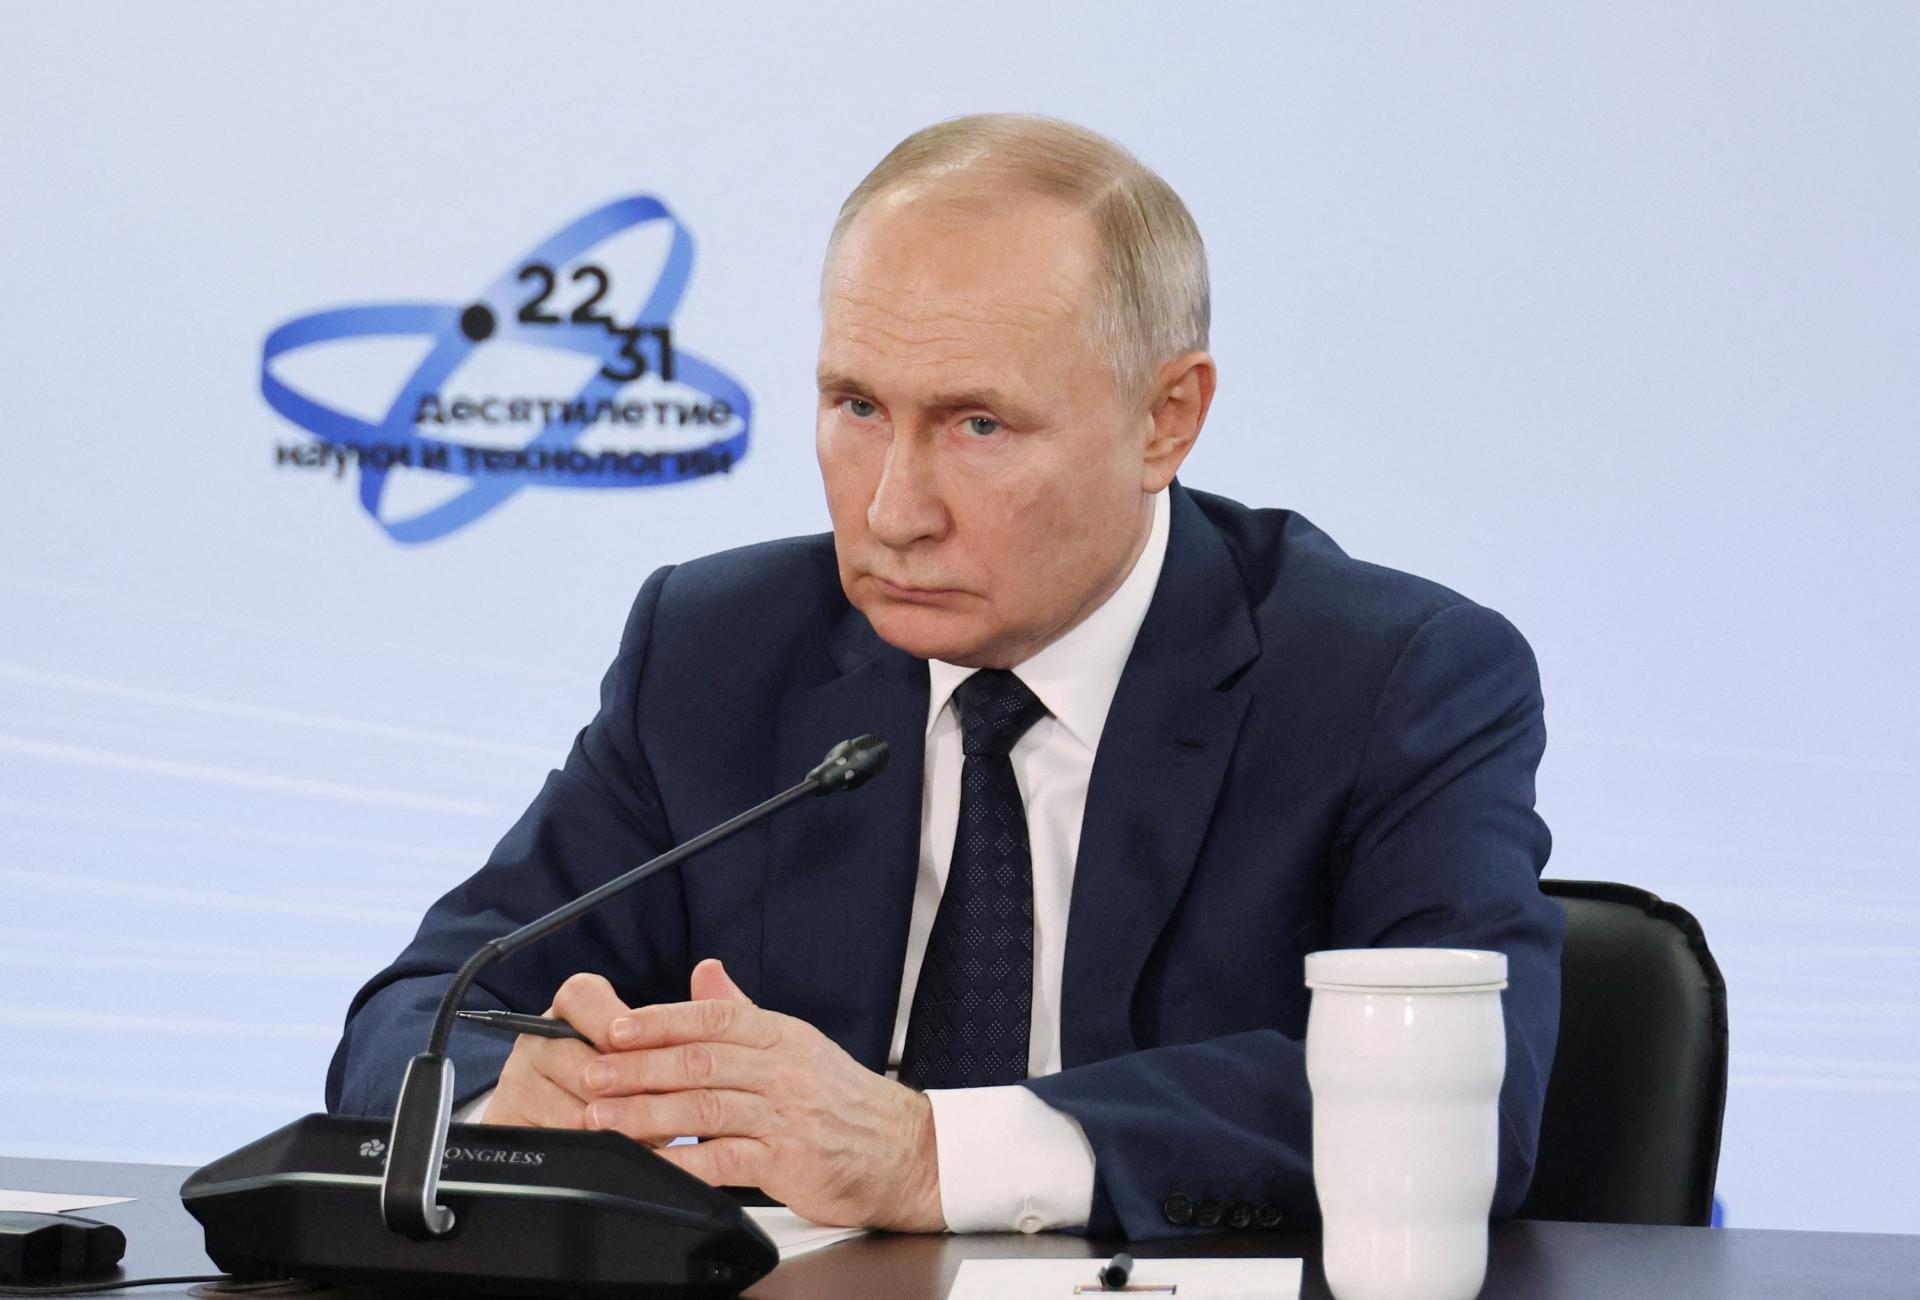 Odveta za sankcie. Putin zobral právo hlasovať zahraničným akcionárom na letisku v Petrohrade